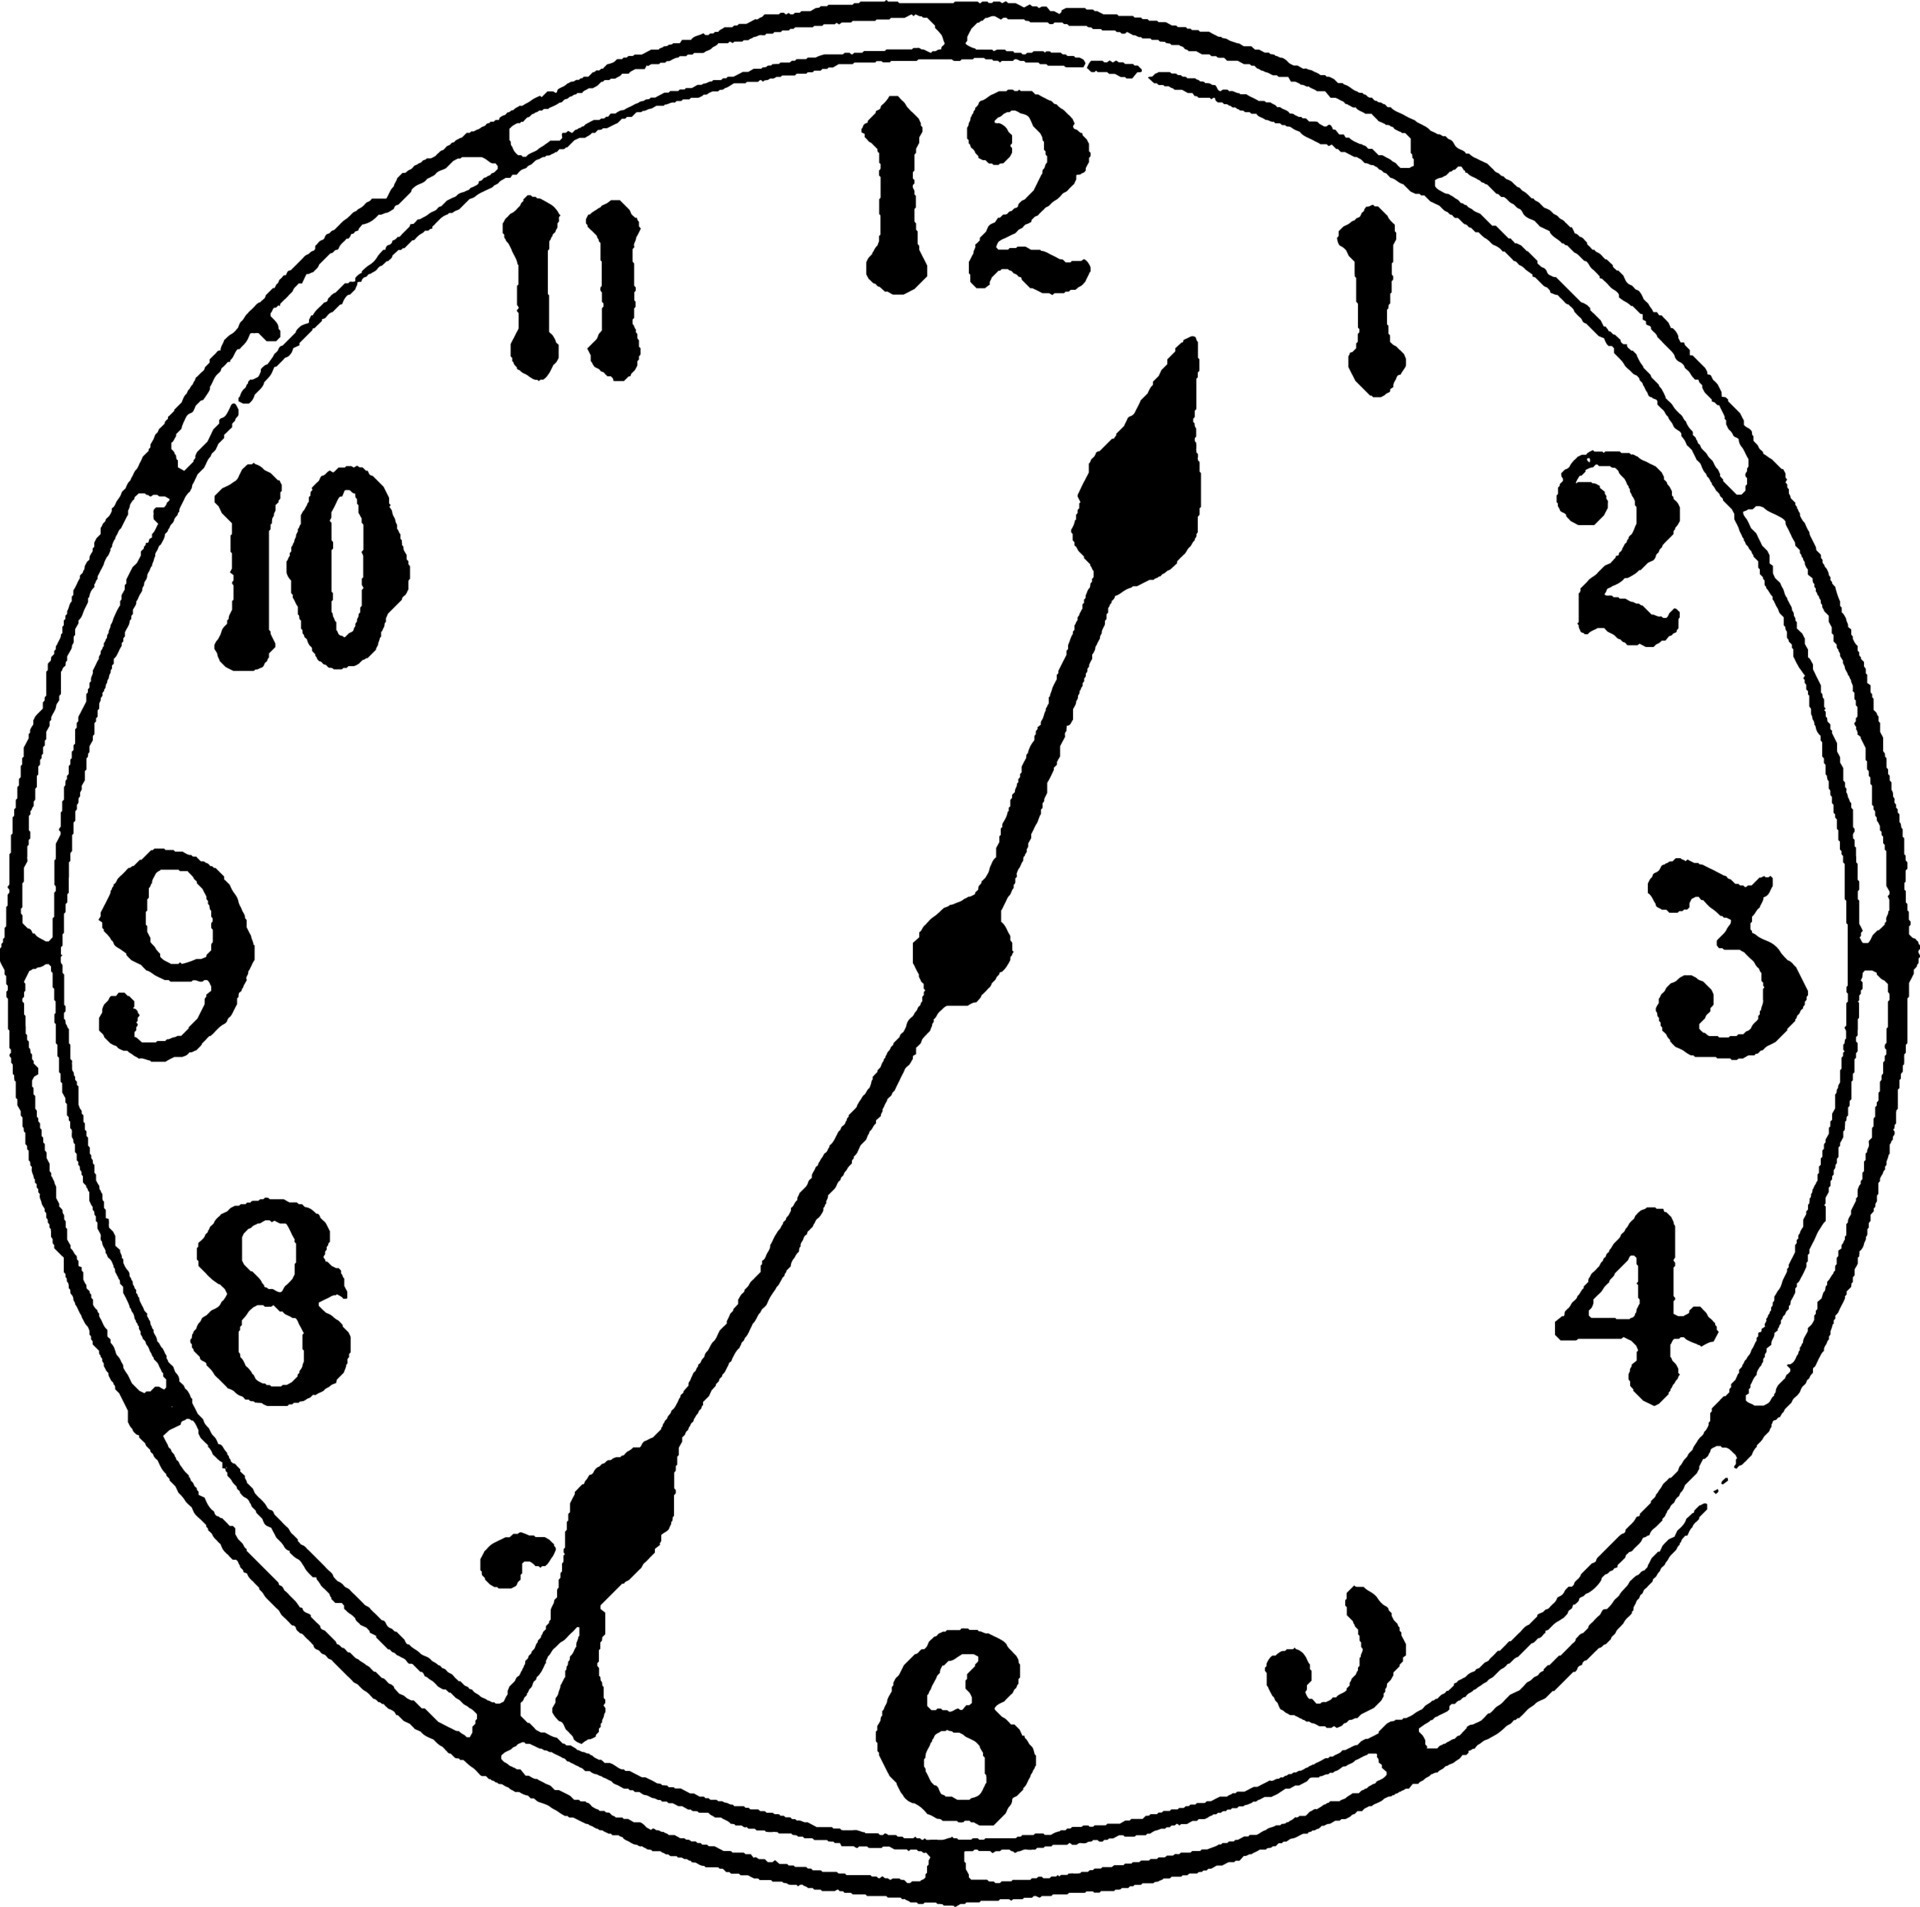 13 35 на часах. Часы 1 минута. O'Clock line drawing. Часы 11:35.